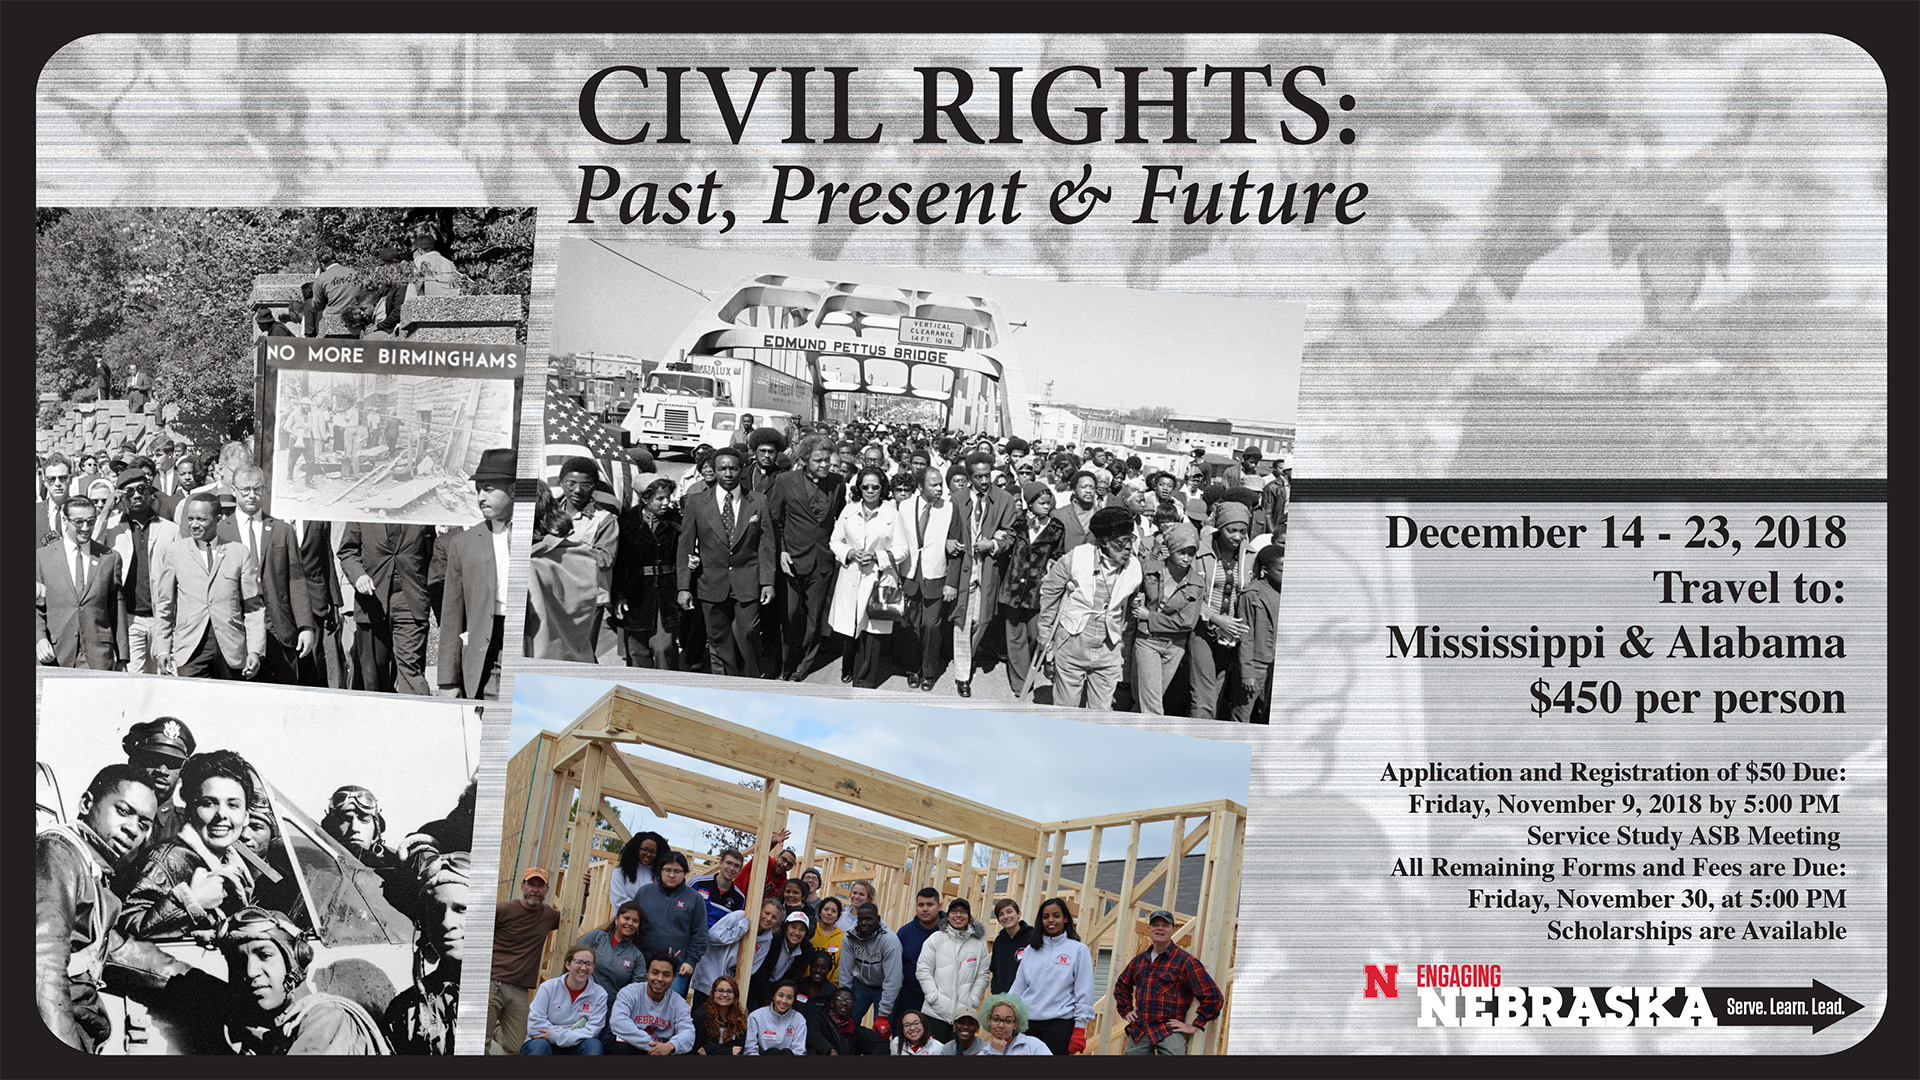 Civil Rights: Past, Present & Future